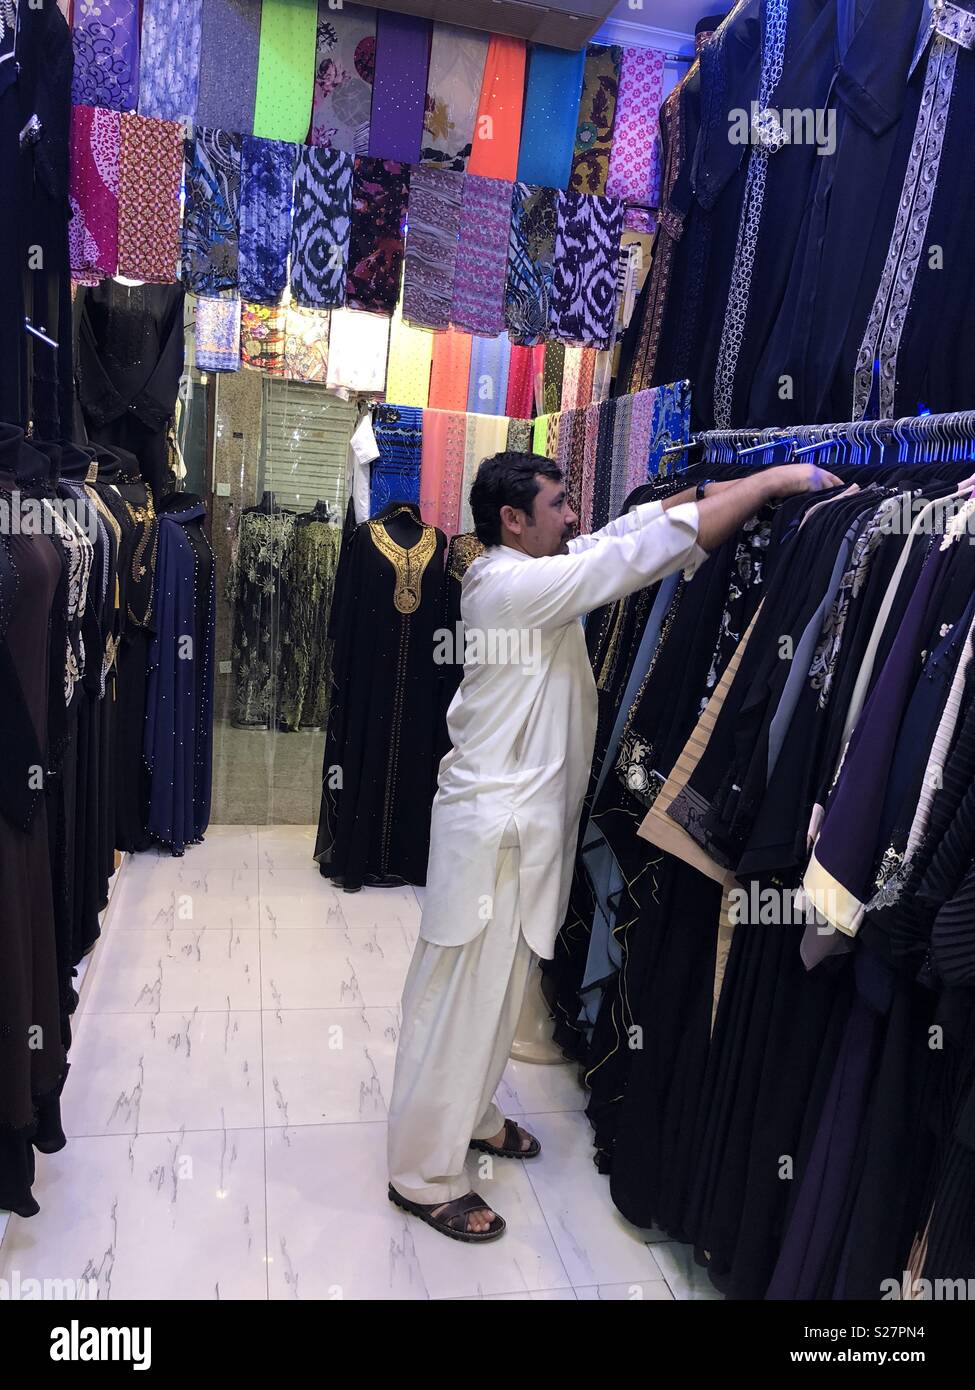 Man in abaya shop Stock Photo